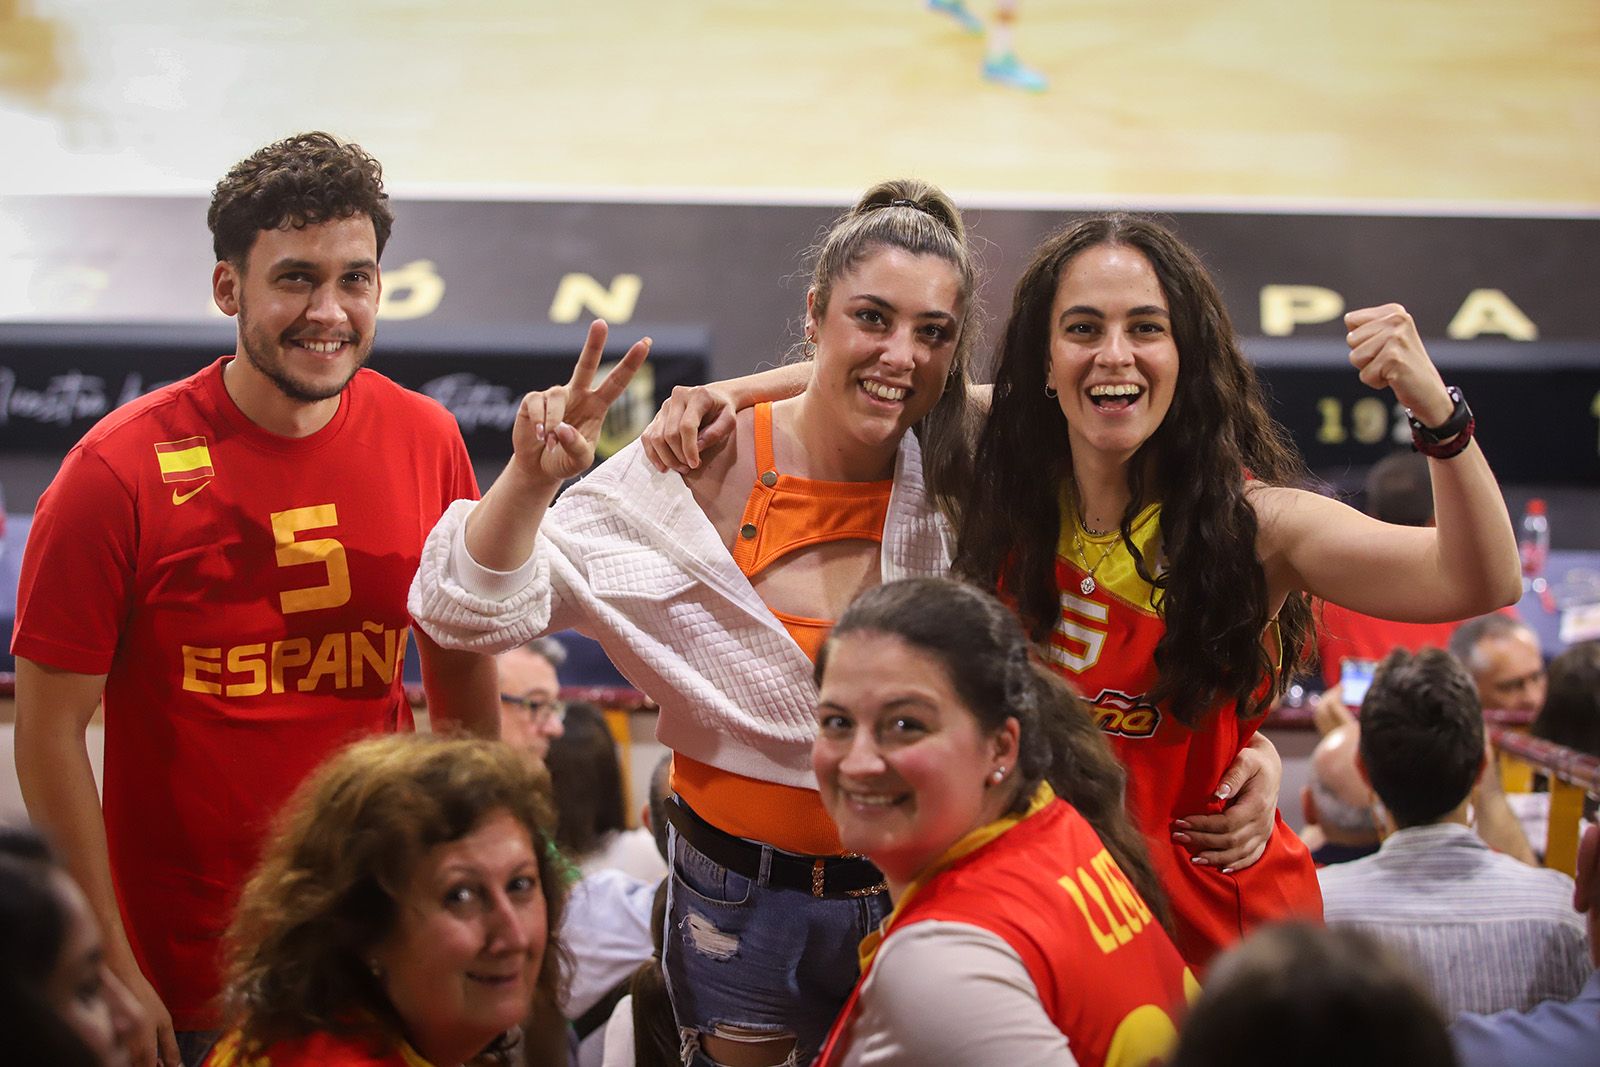 La selección española de baloncesto ante Turquía, en imágenes